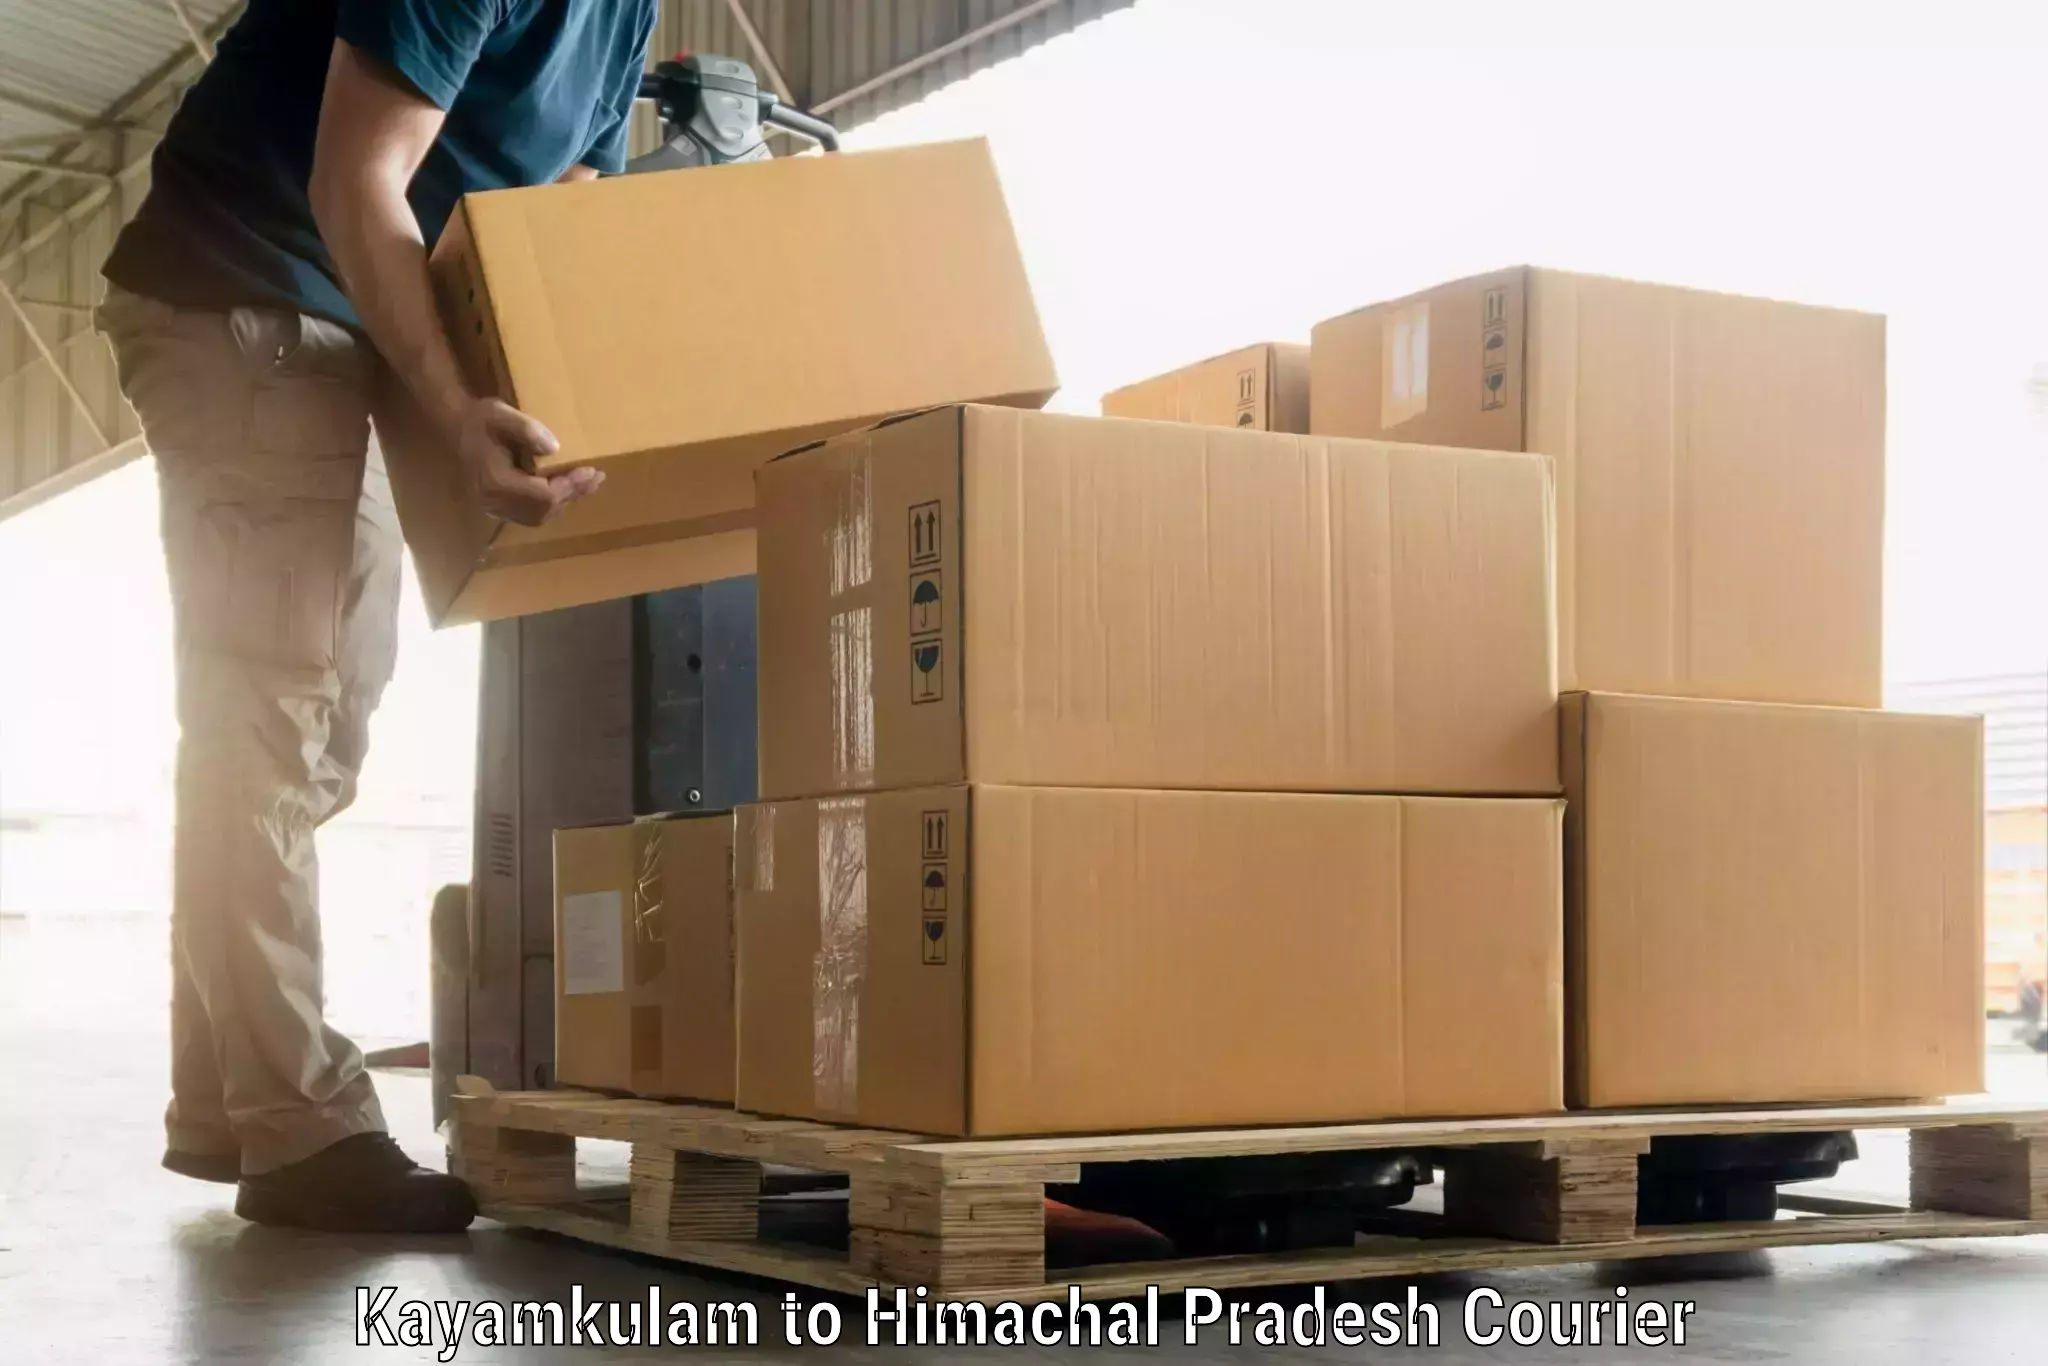 Luggage shipment tracking Kayamkulam to Himachal Pradesh